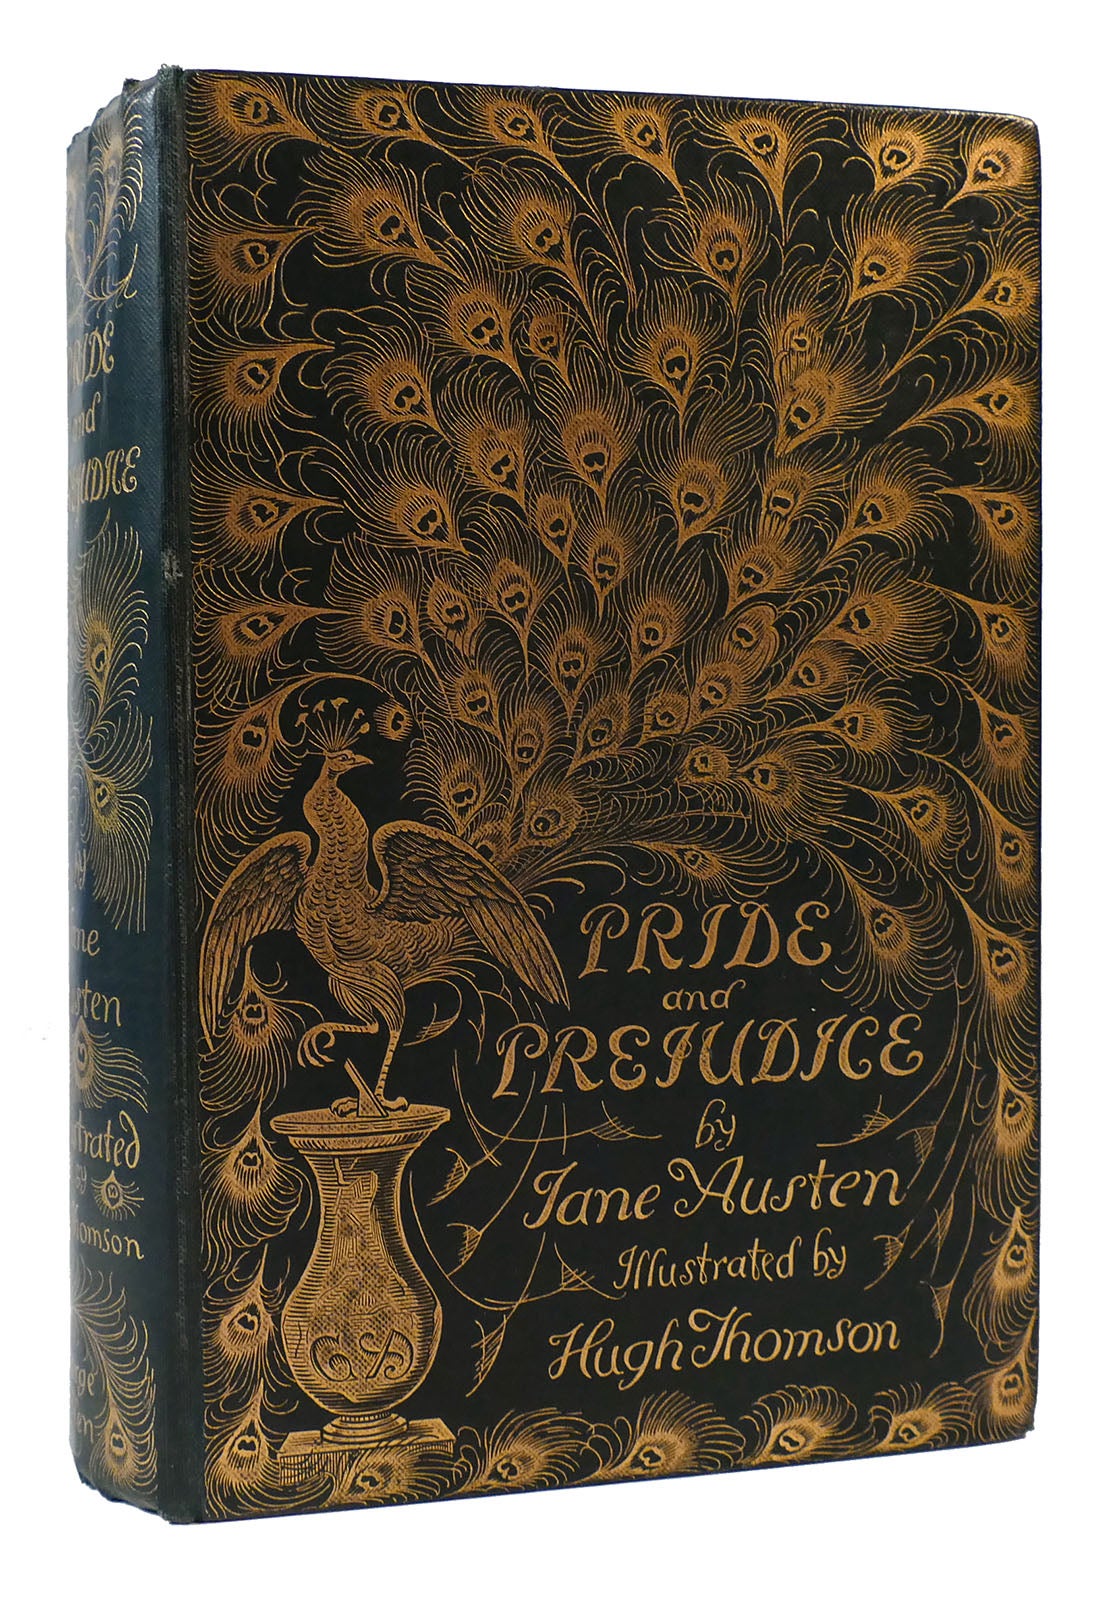 pride and prejudice book spine